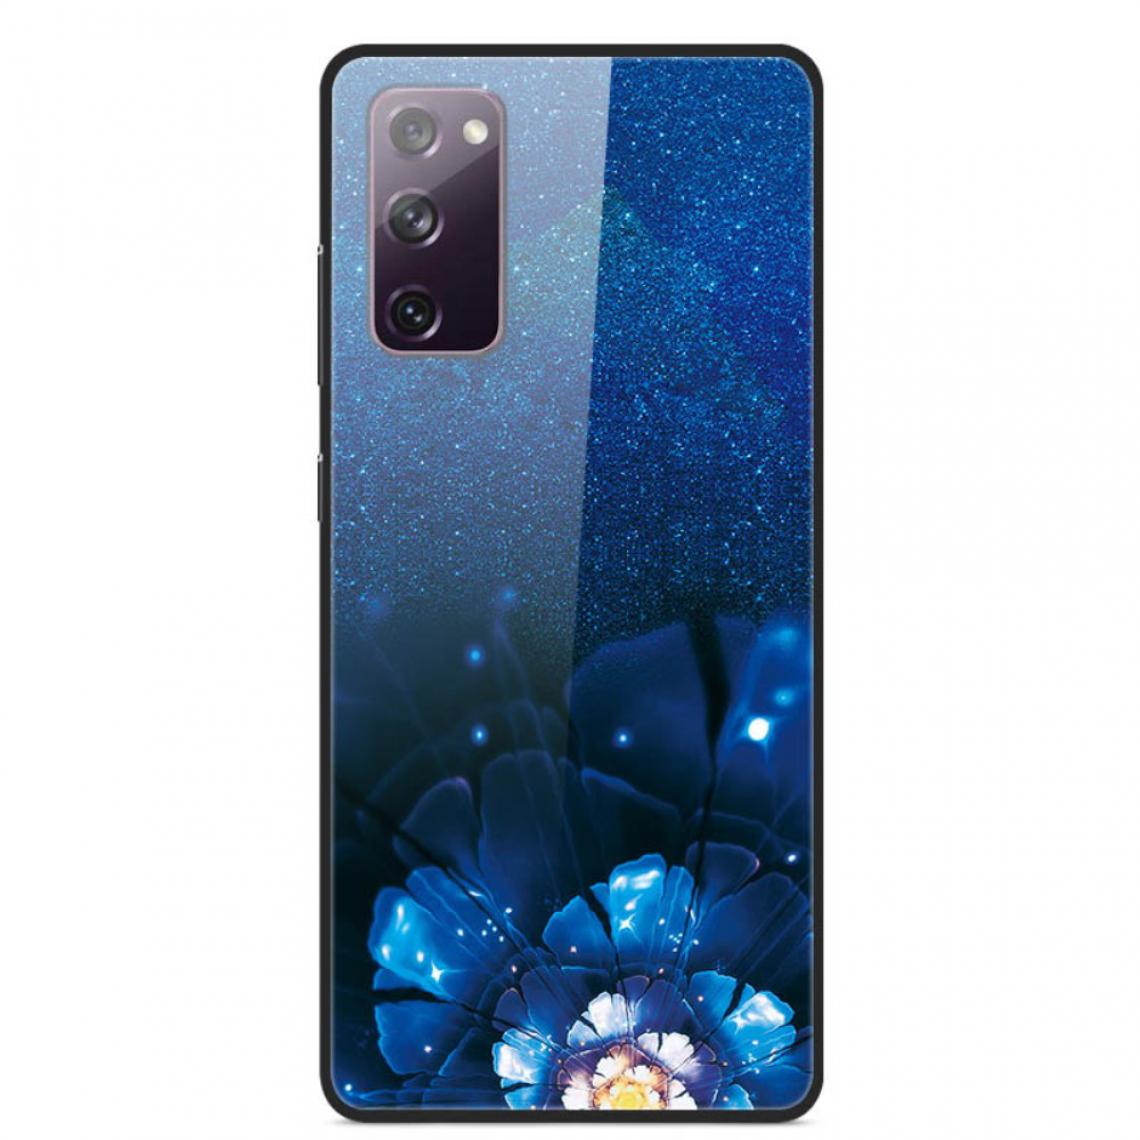 Other - Coque en TPU verre d'impression de style fantaisie fleur bleue pour votre Samsung Galaxy S20 FE/S20 FE 5G - Coque, étui smartphone